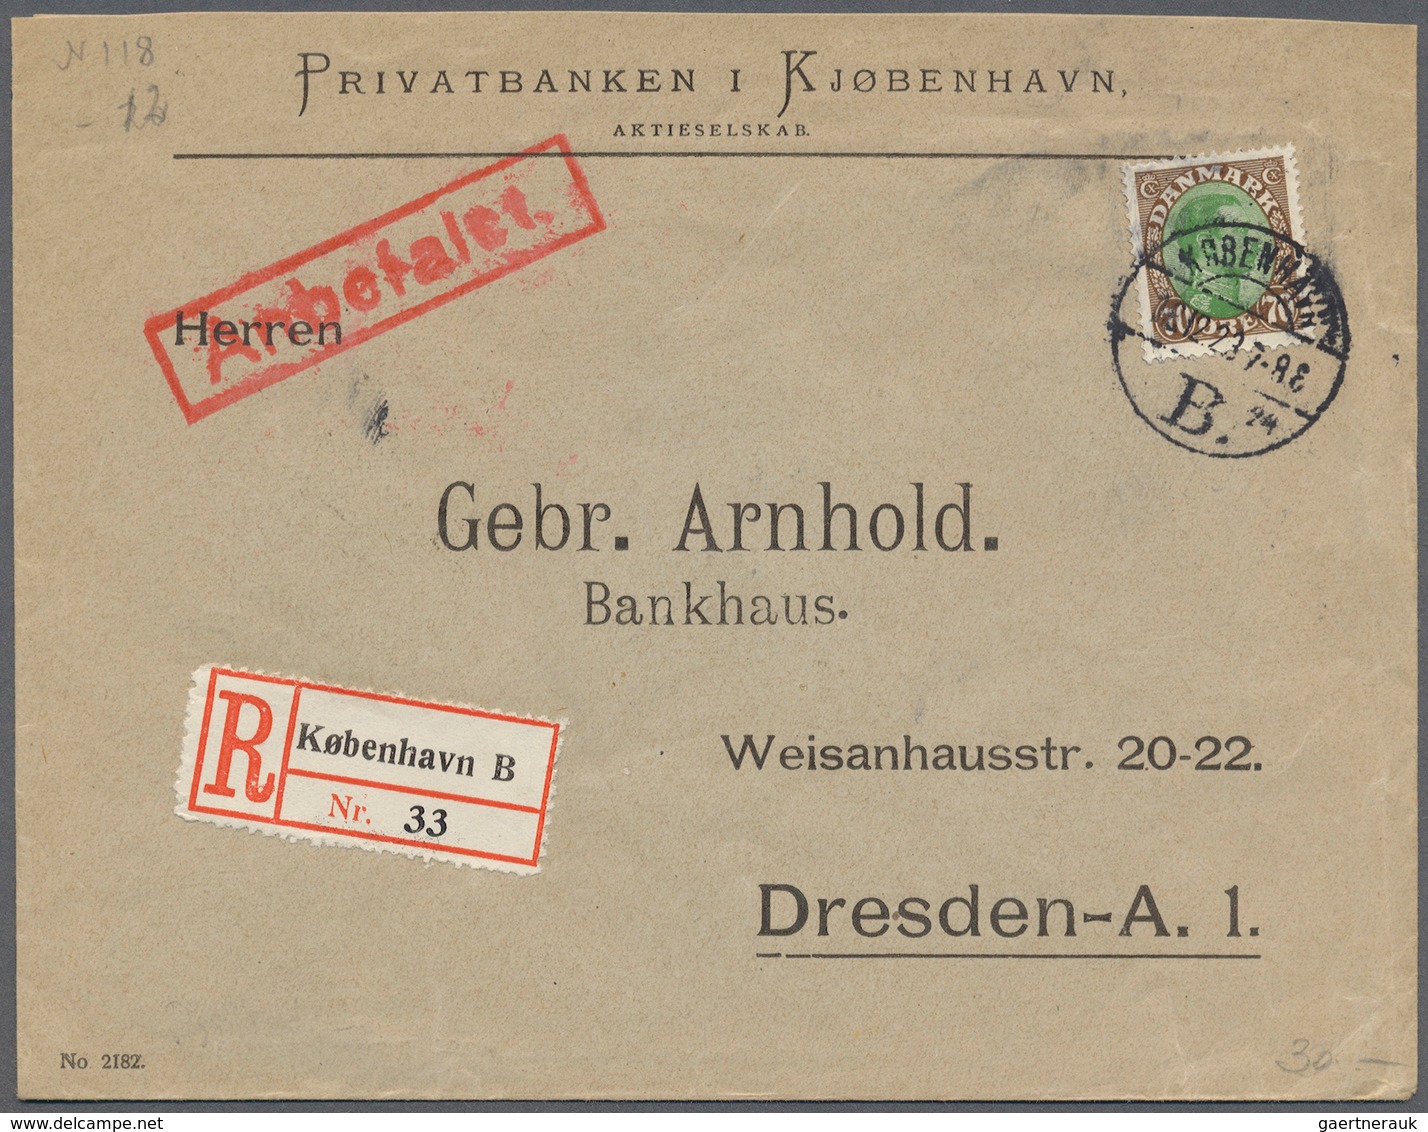 Dänemark: 1890 (ab), dabei interessante Ganzsachen, Flugpost, alte Ansichtskarten, Perfins u. a.